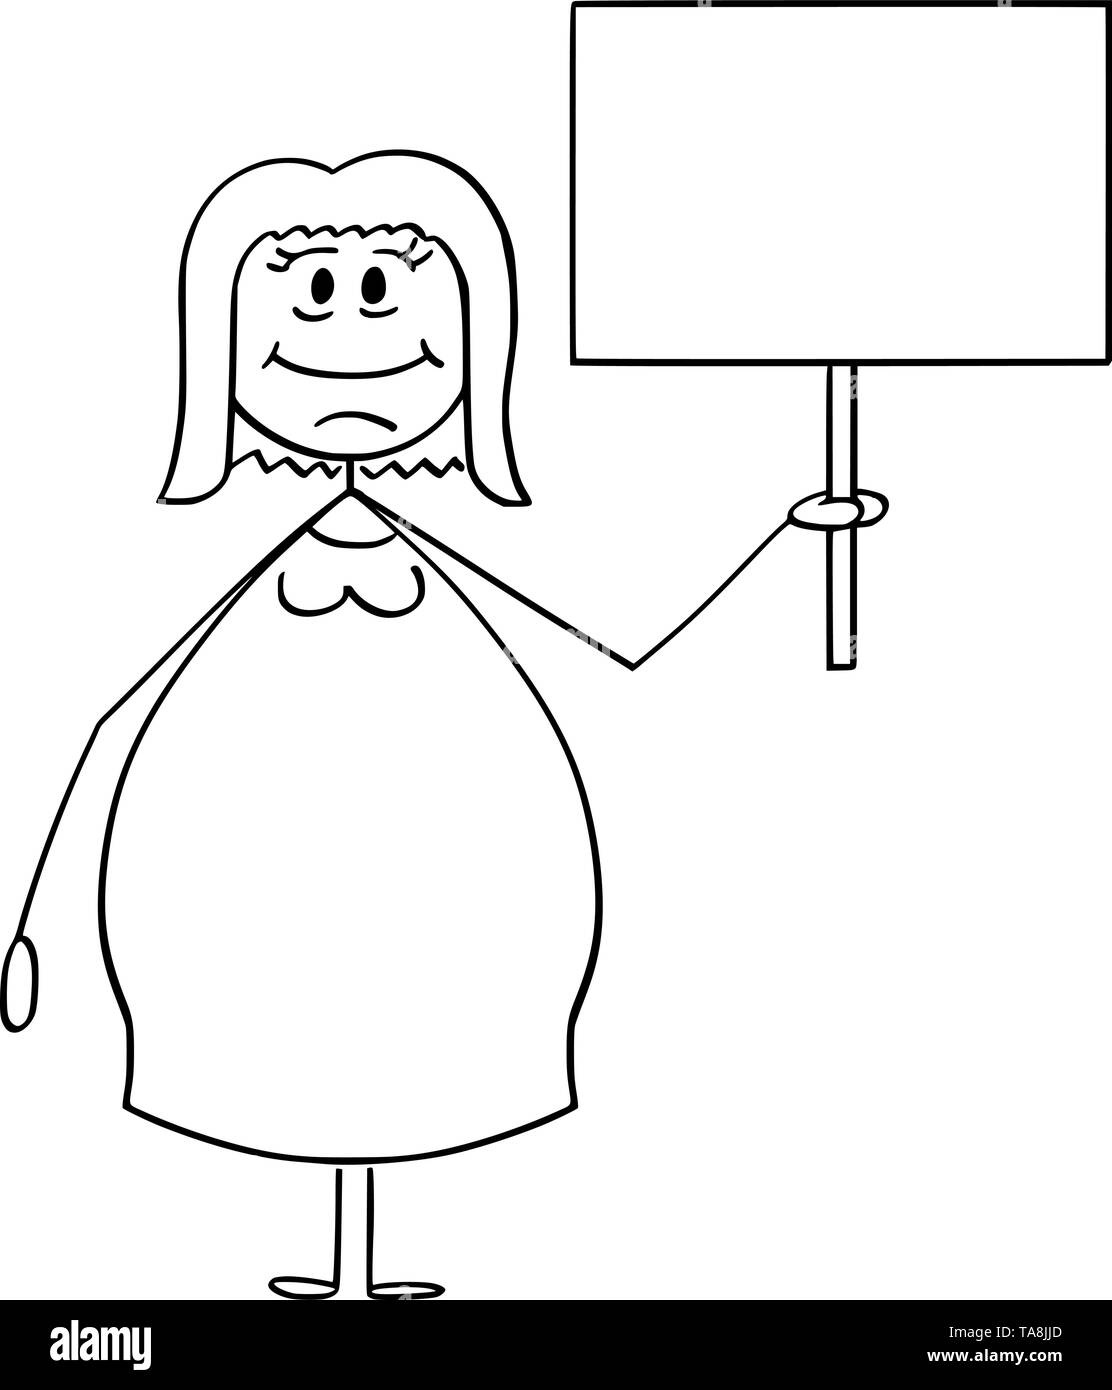 Vektor cartoon Strichmännchen Zeichnen konzeptionelle Darstellung der lächelnden übergewichtig oder fettleibig Frau mit leeren Zeichen bereit für ihren Text. Stock Vektor